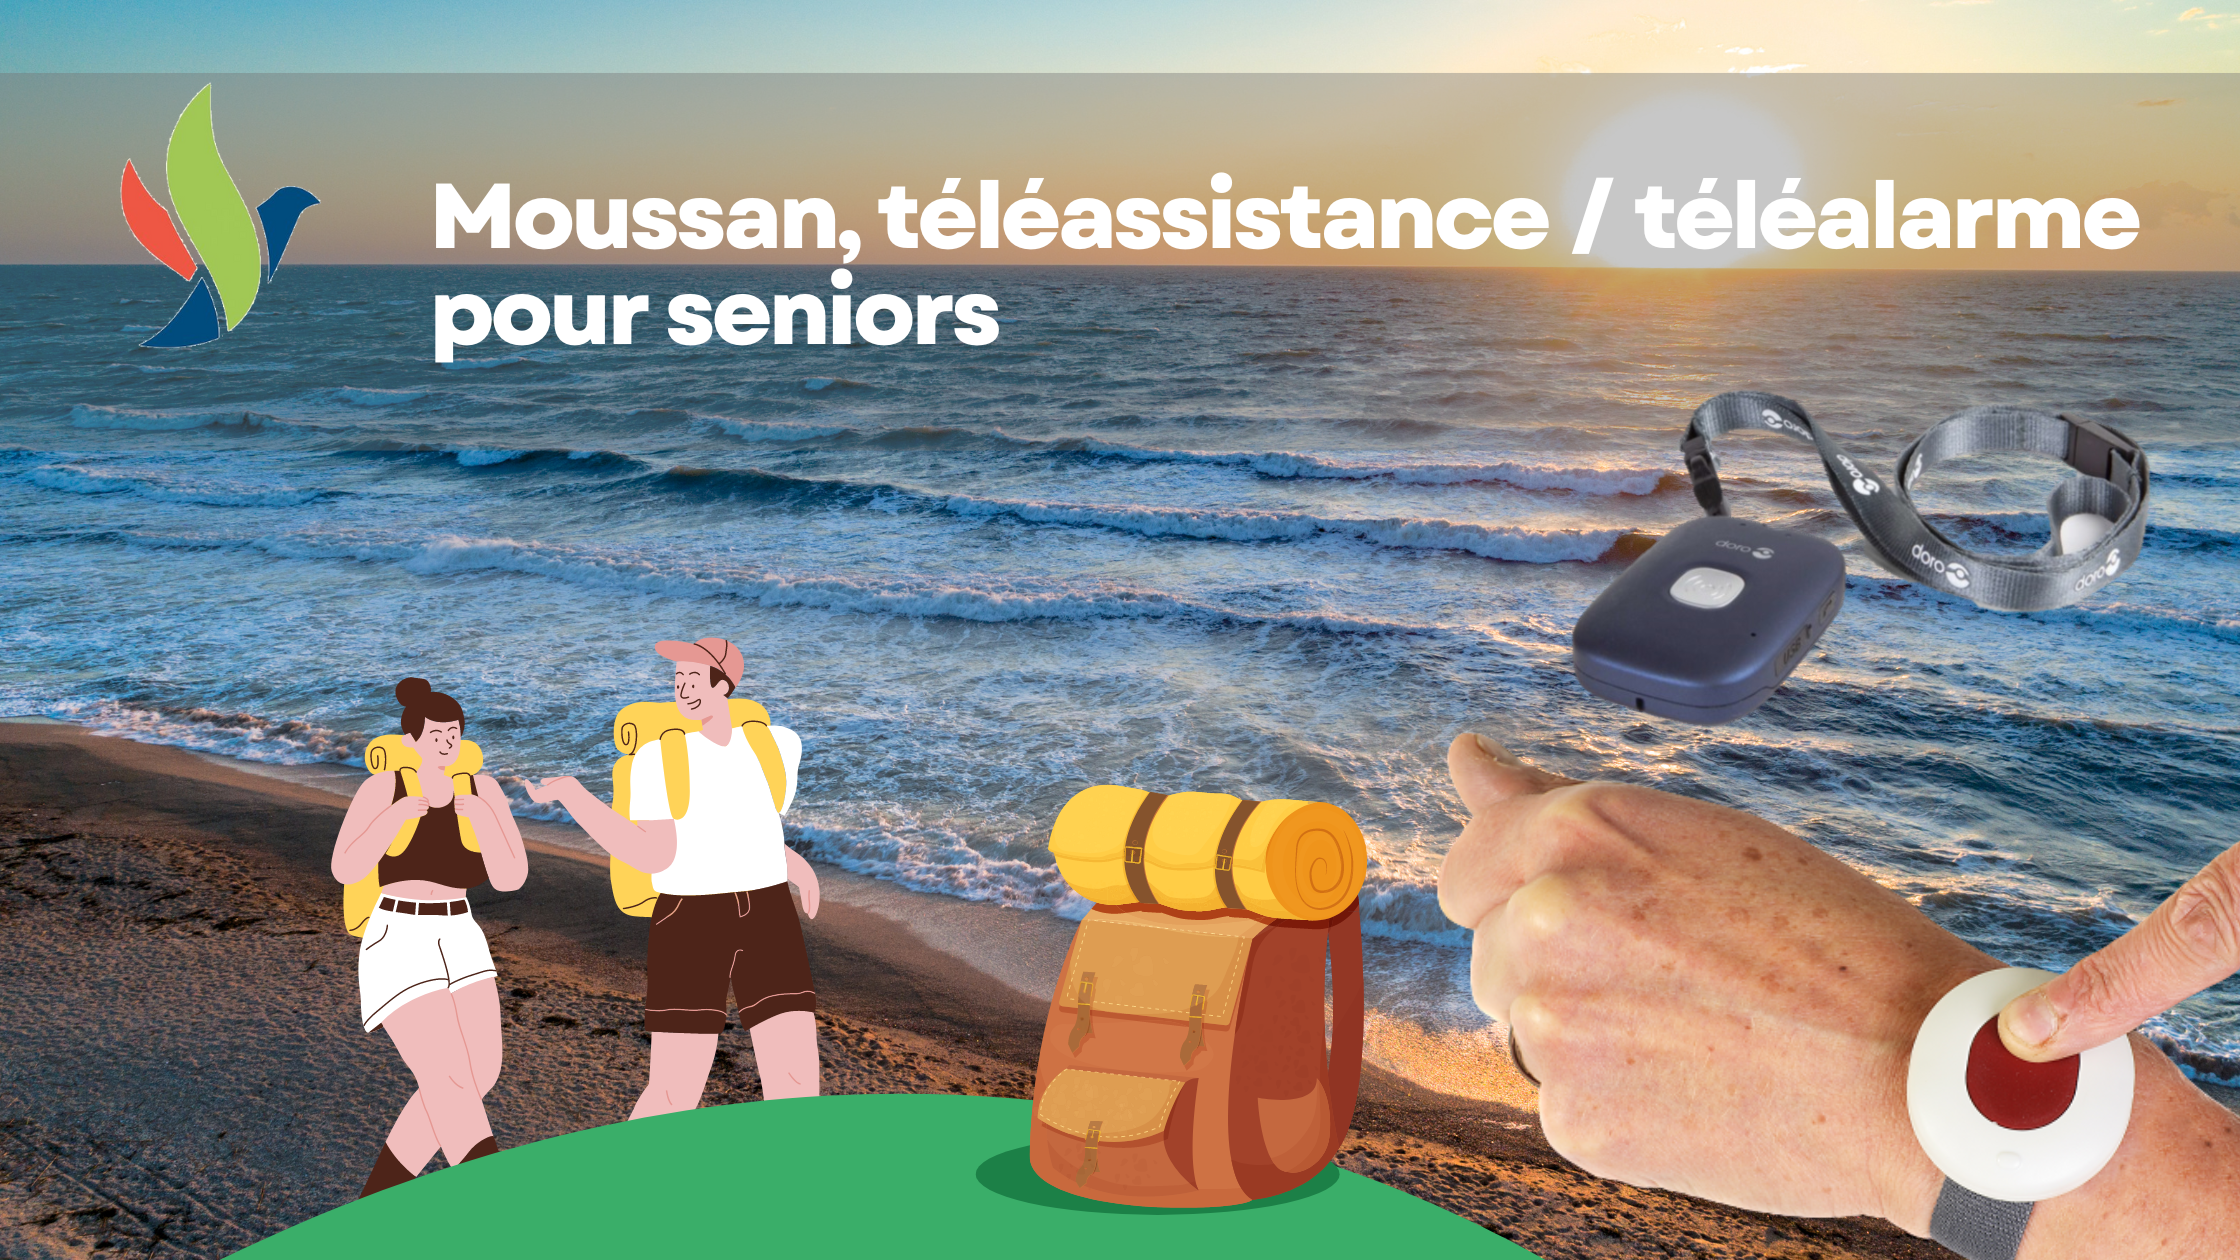 Moussan téléalarme, téléassistance seniors (1)